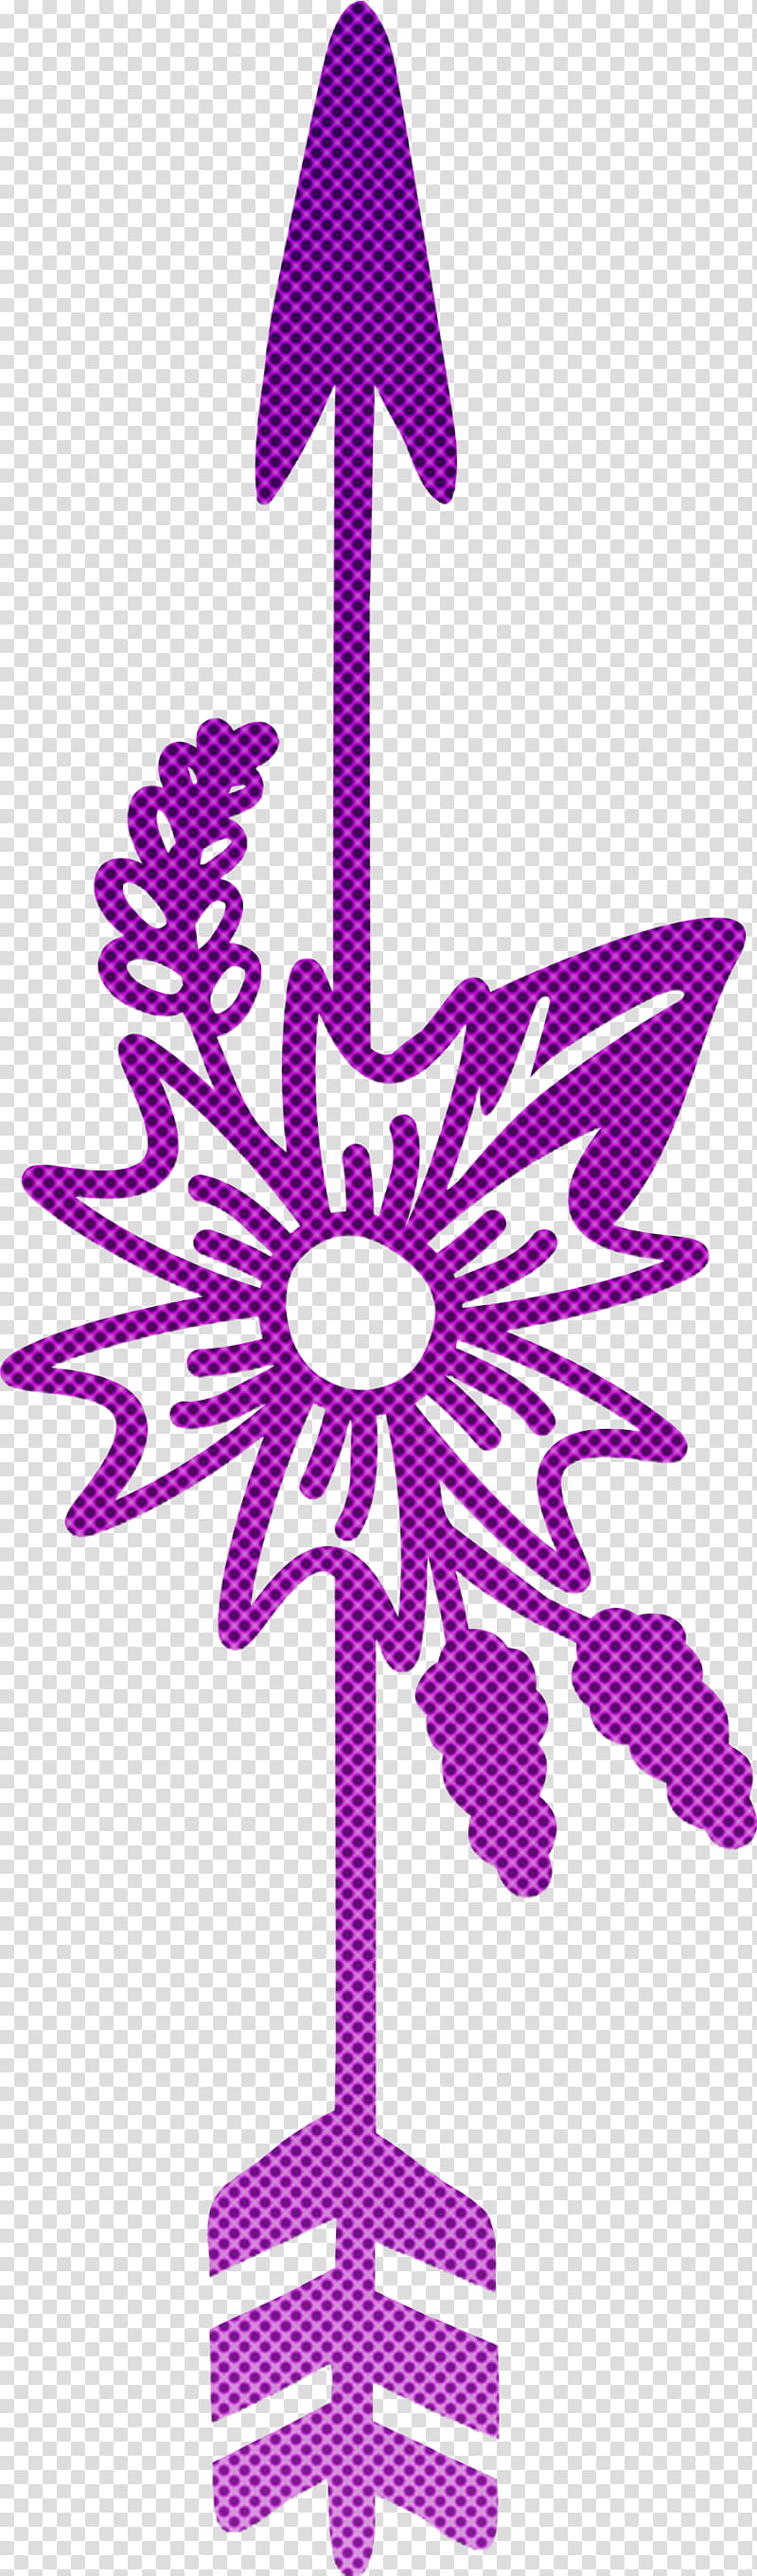 boho arrow flower arrow, Pink, Purple, Violet, Magenta, Plant, Petal, Symmetry transparent background PNG clipart